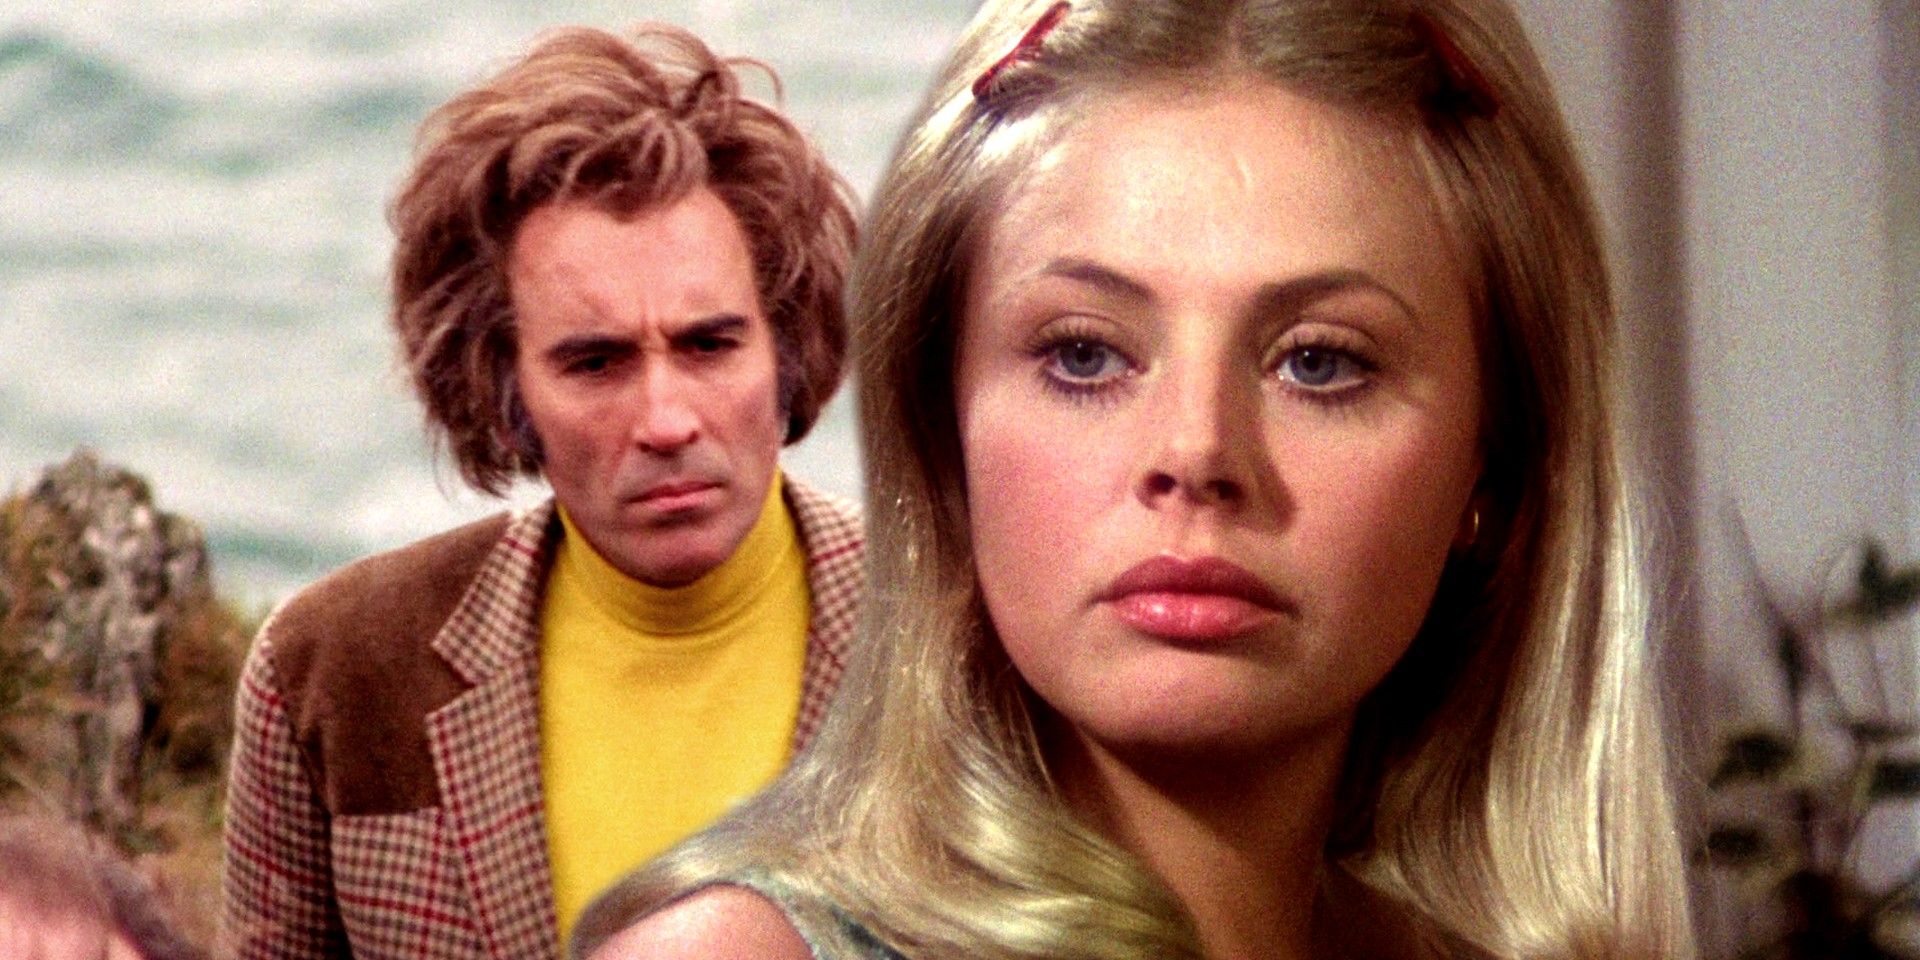 Estrella de cine de terror de los 70 recuerda haber sido engañada por un doble de cuerpo desnudo: "Me sentí devastada"